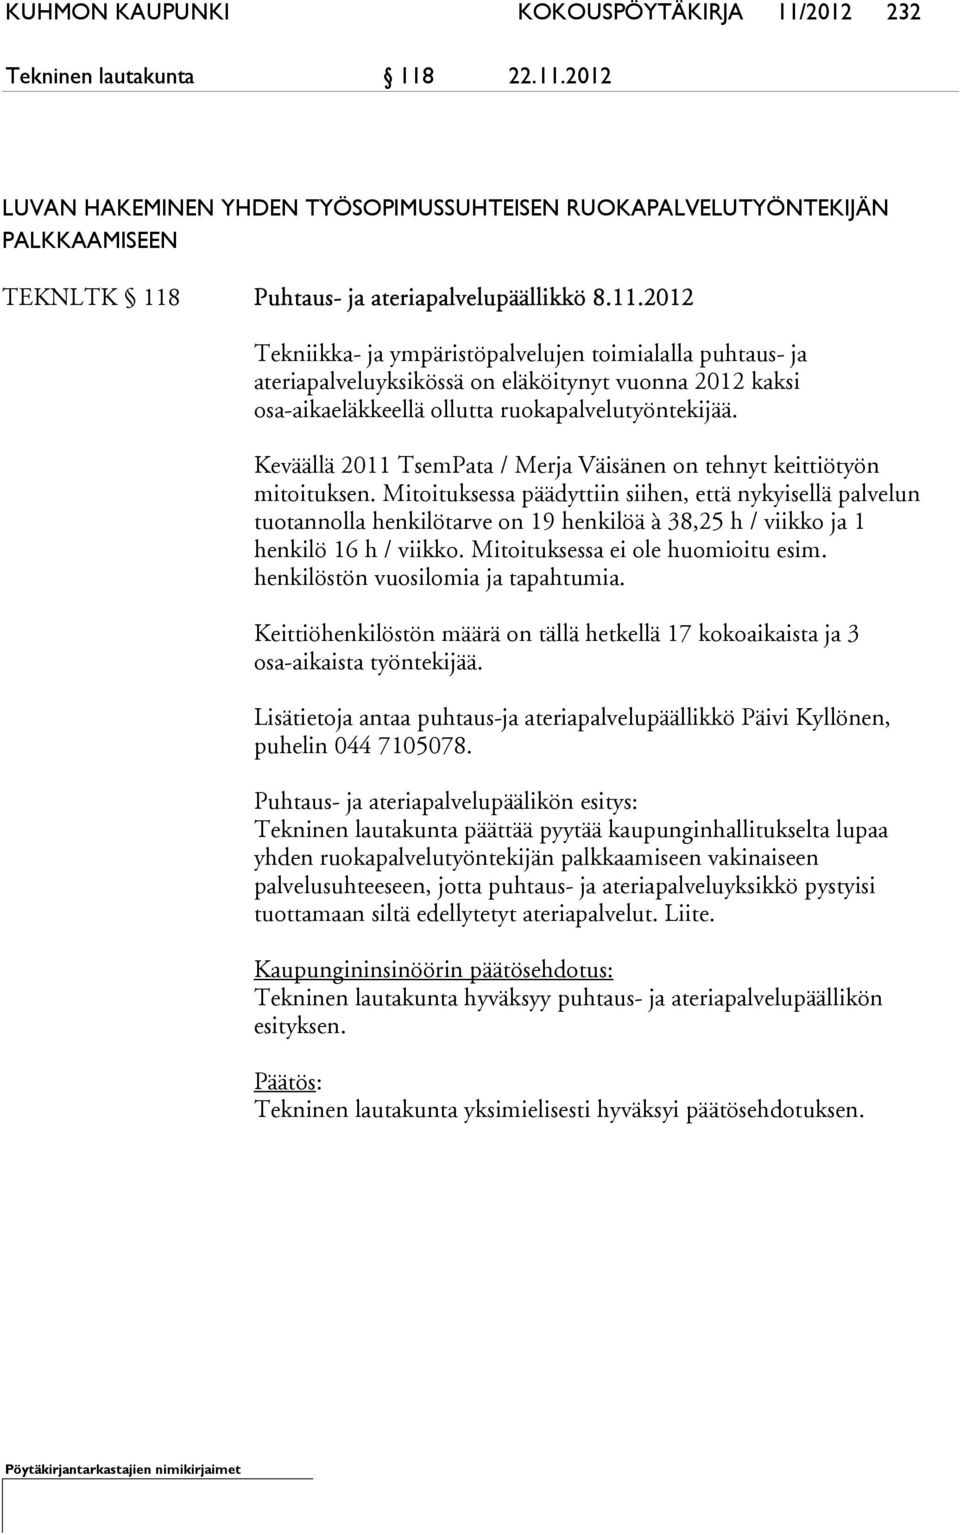 Keväällä 2011 TsemPata / Merja Väisänen on tehnyt keittiötyön mitoituksen.